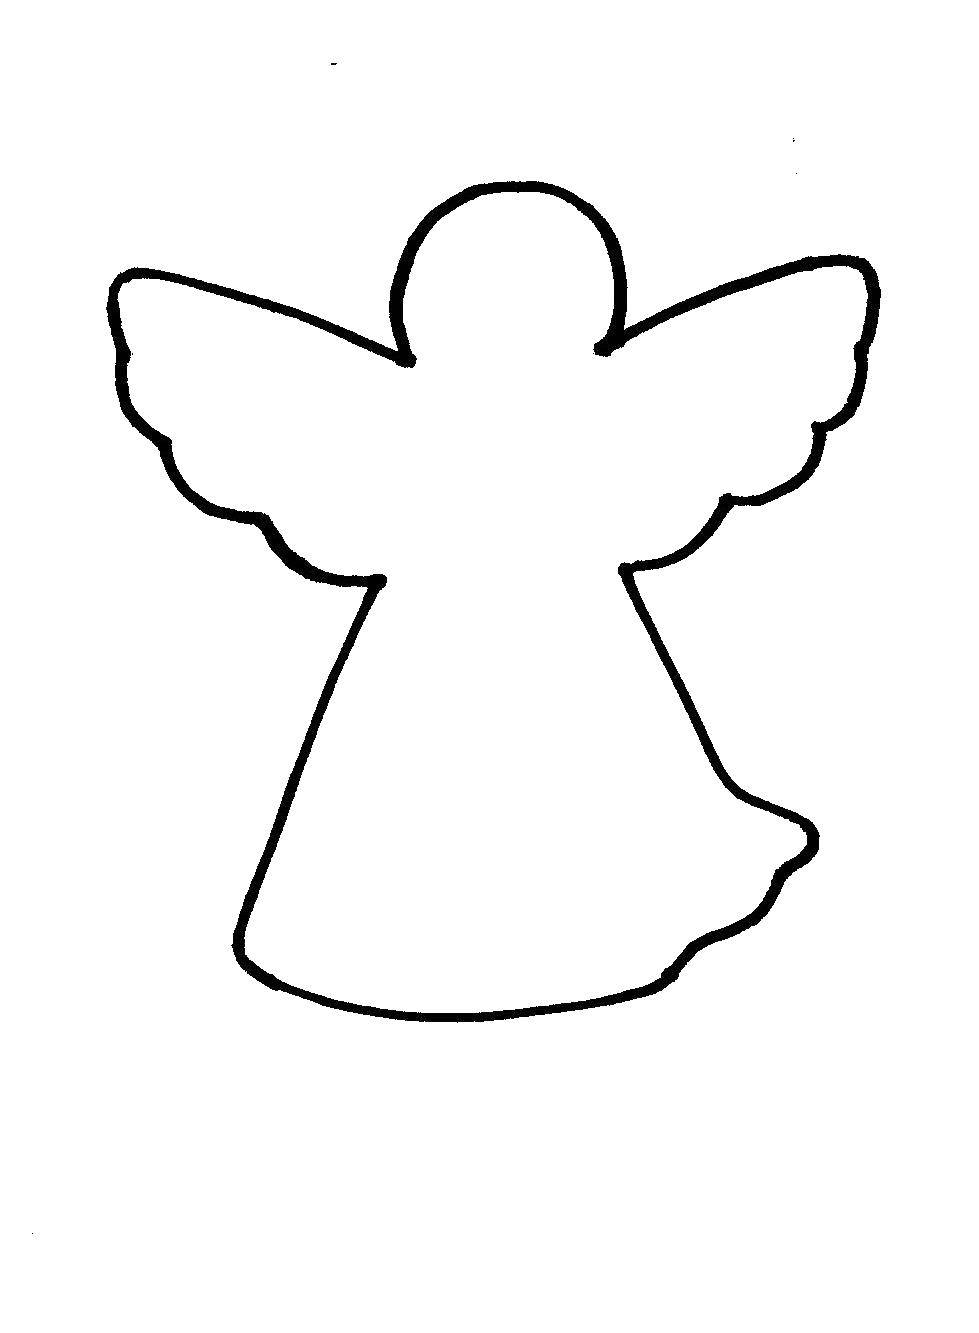 Контуры ангела для раскраски и вырезания - бесплатные раскраски для детей и взрослых (контуры)